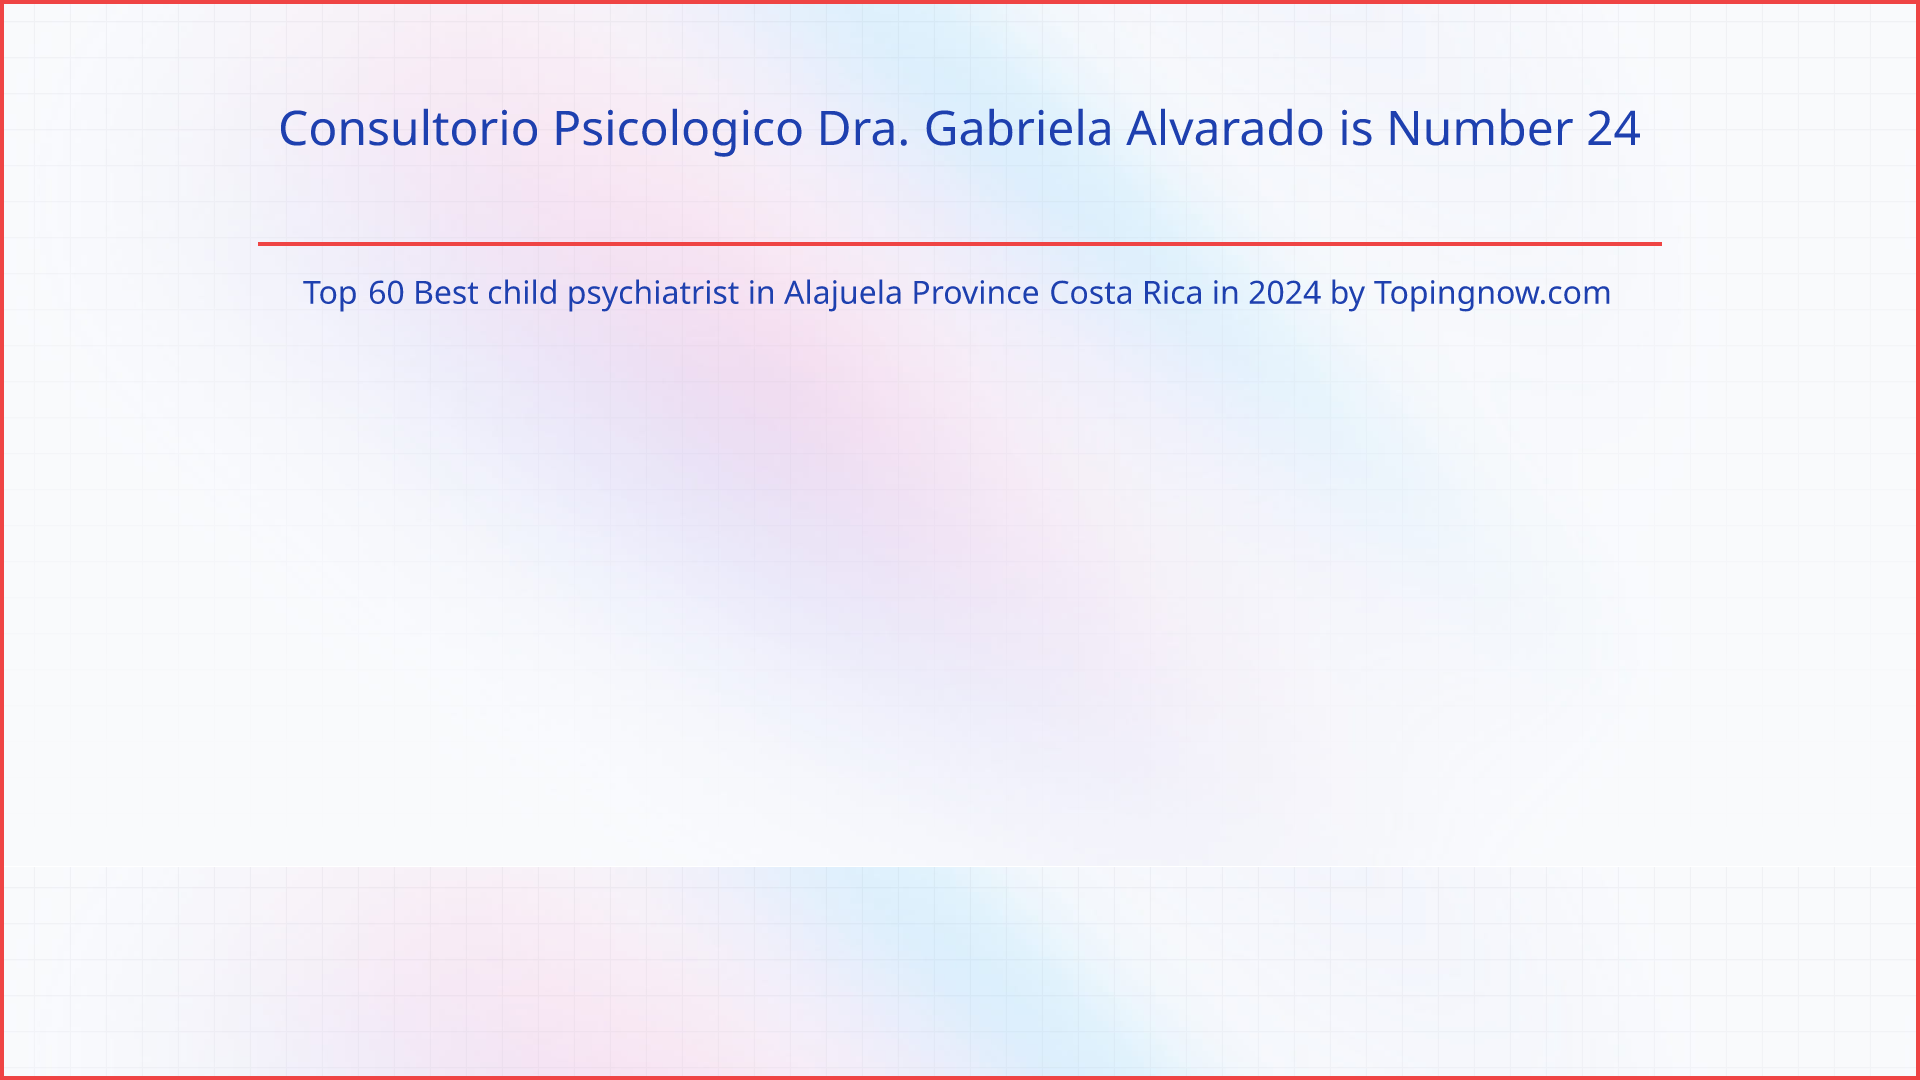 Consultorio Psicologico Dra. Gabriela Alvarado: Top 60 Best child psychiatrist in Alajuela Province Costa Rica in 2024